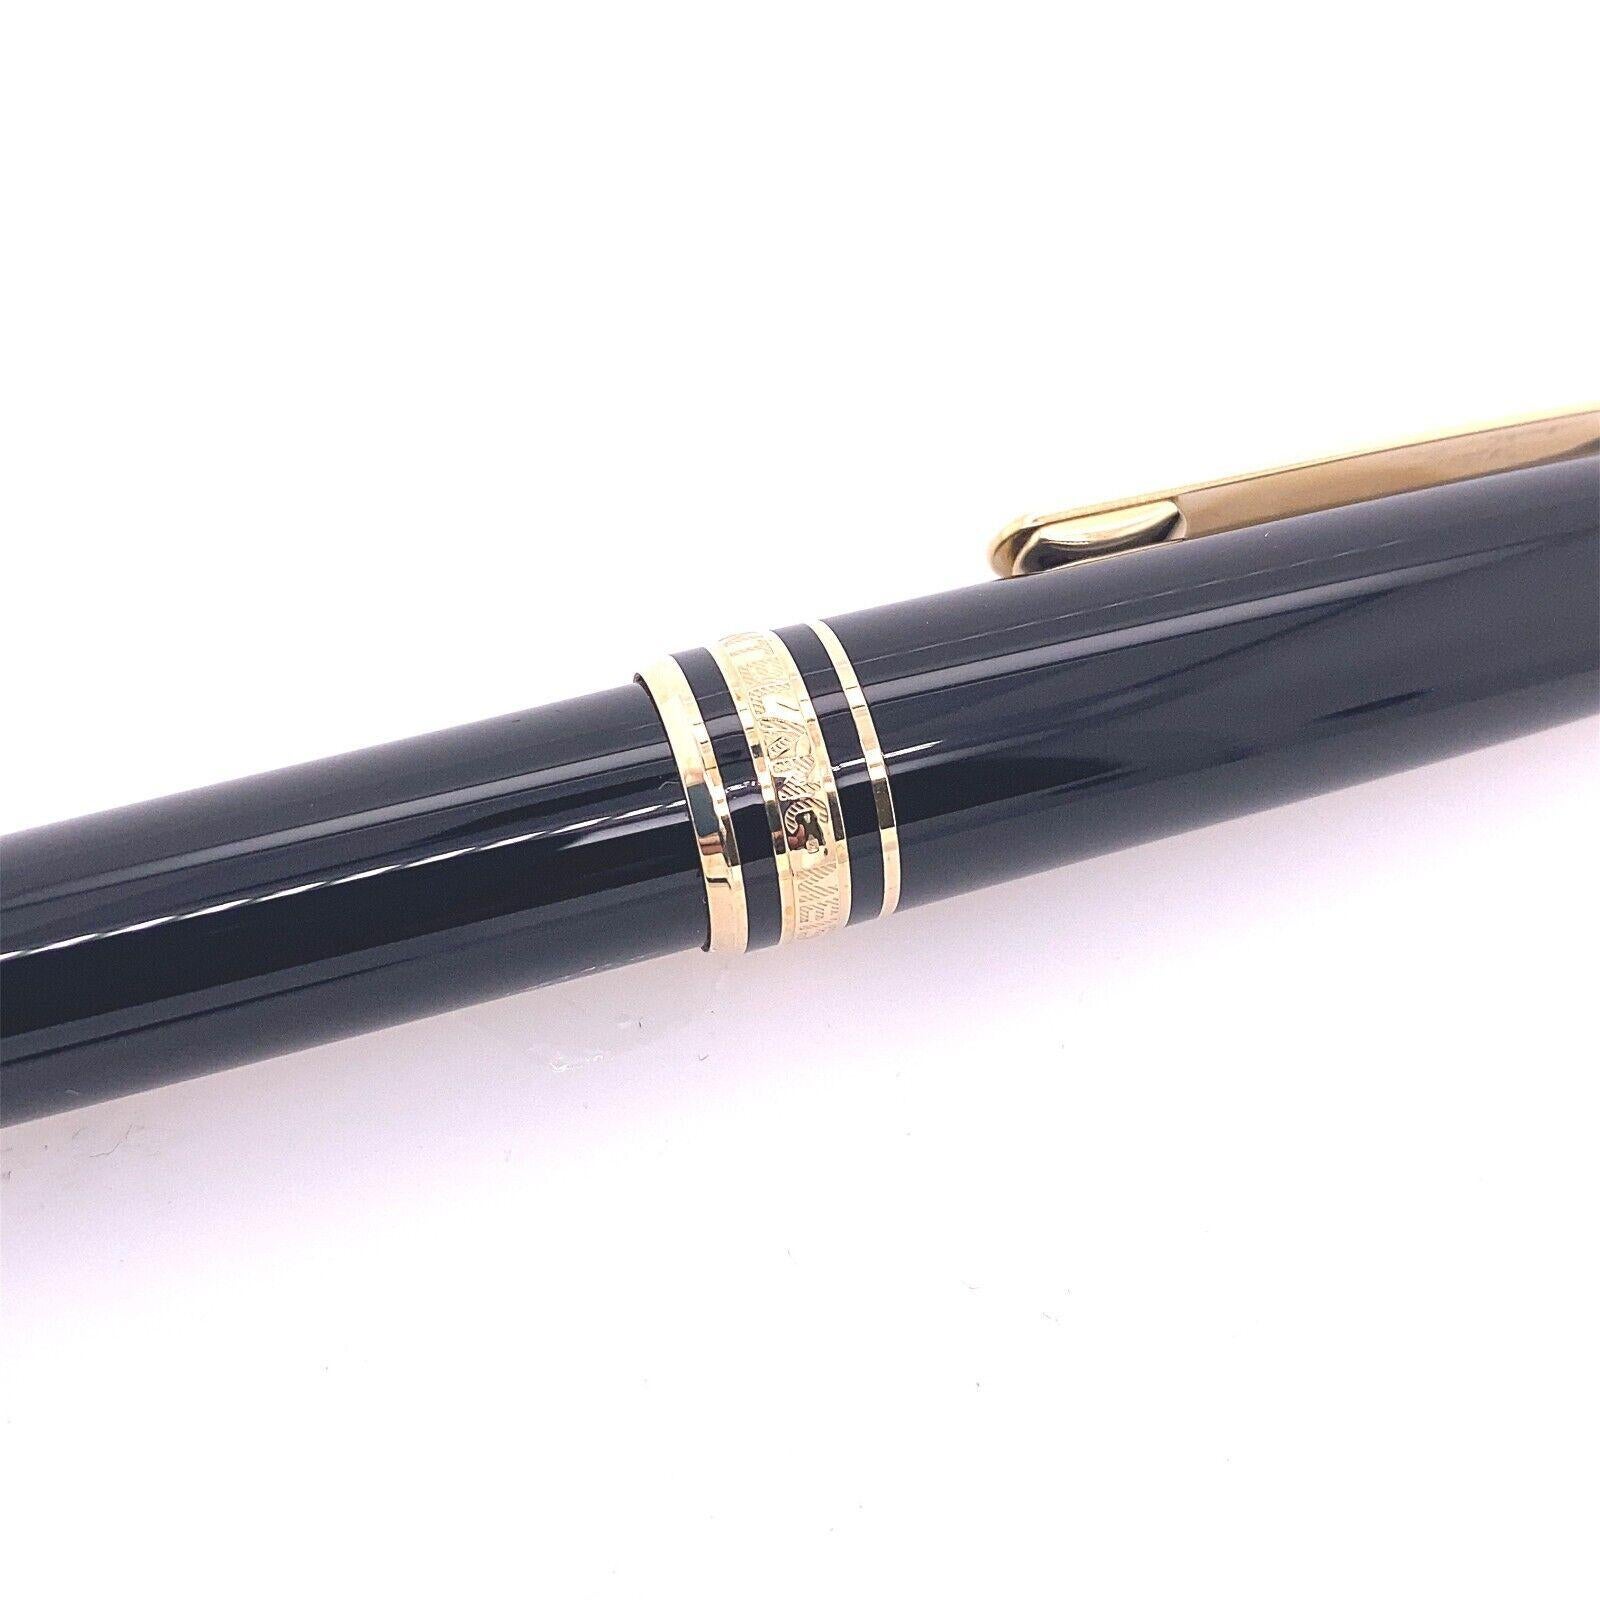 Der Kugelschreiber Meisterstück von Montblanc zeichnet sich durch hochwertige Handwerkskunst aus.
Ein Montblanc Schreibgerät ist ein Symbol für ein hervorragendes Schreibgerät, mit dem Sie Ihr Schreiben zu einem Kunstwerk machen können. Details für